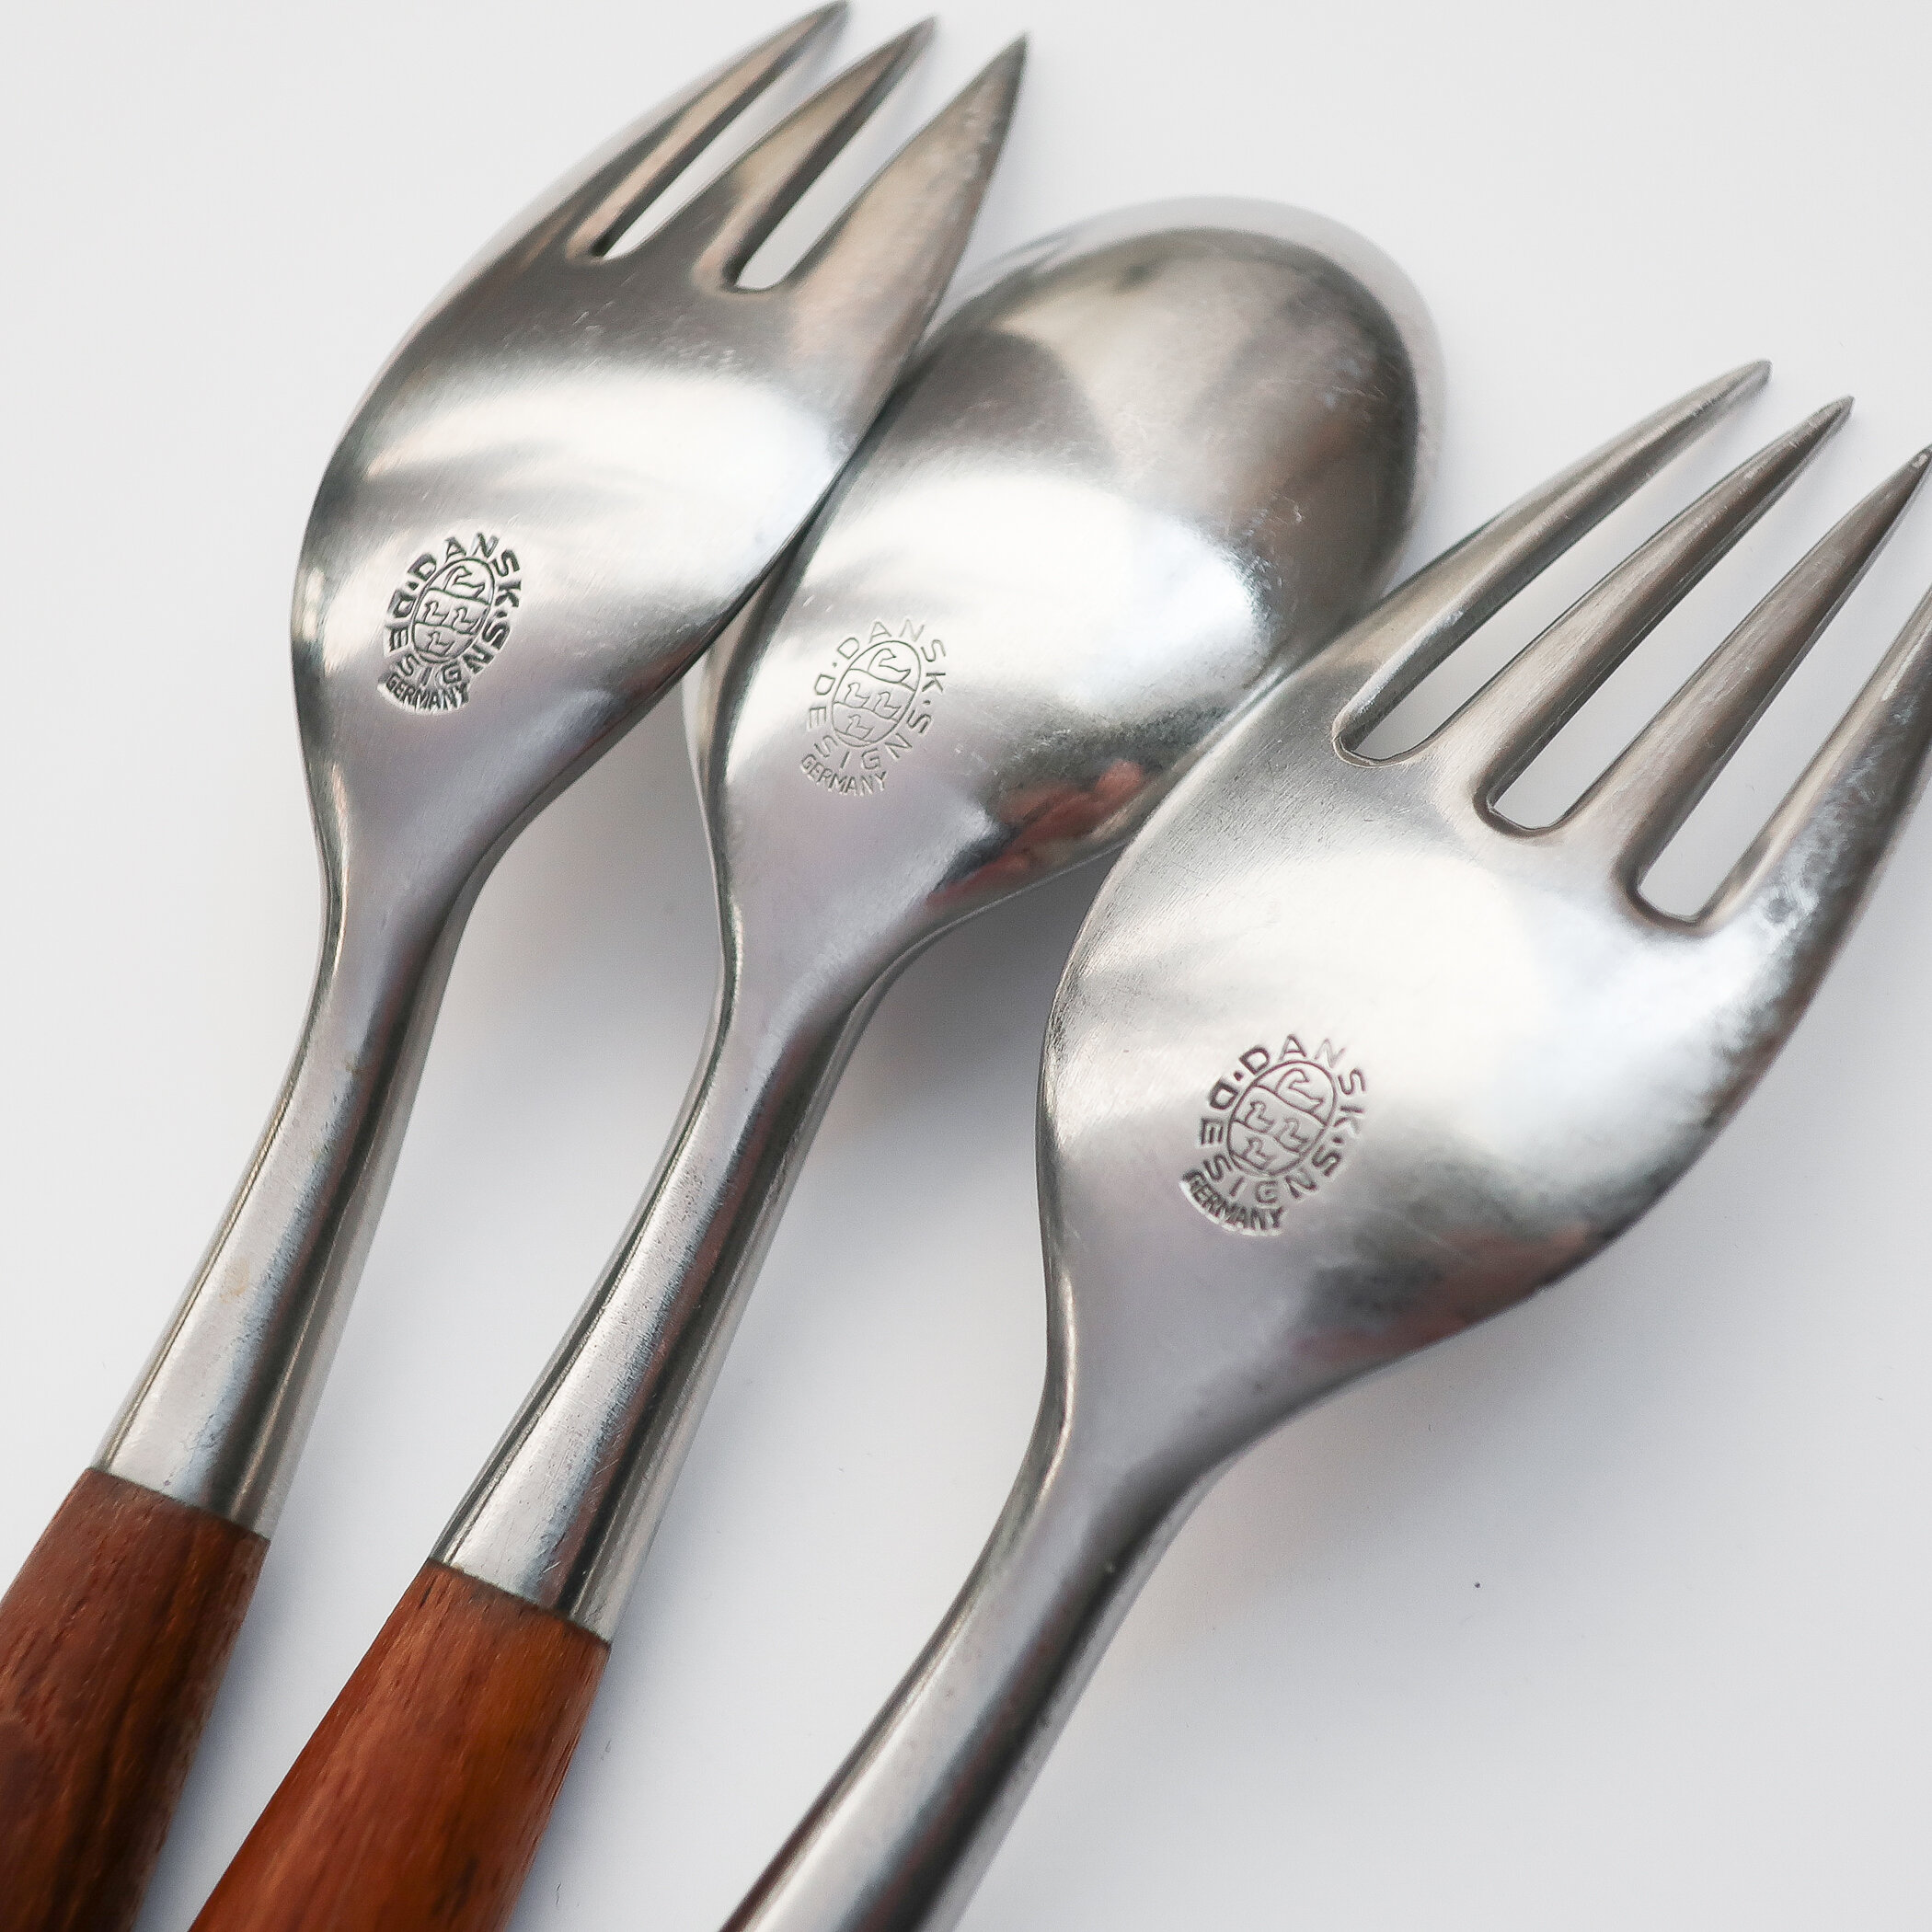 4 Brass Dessert Forks Teak Wood Handle with Rivets 6 "L 